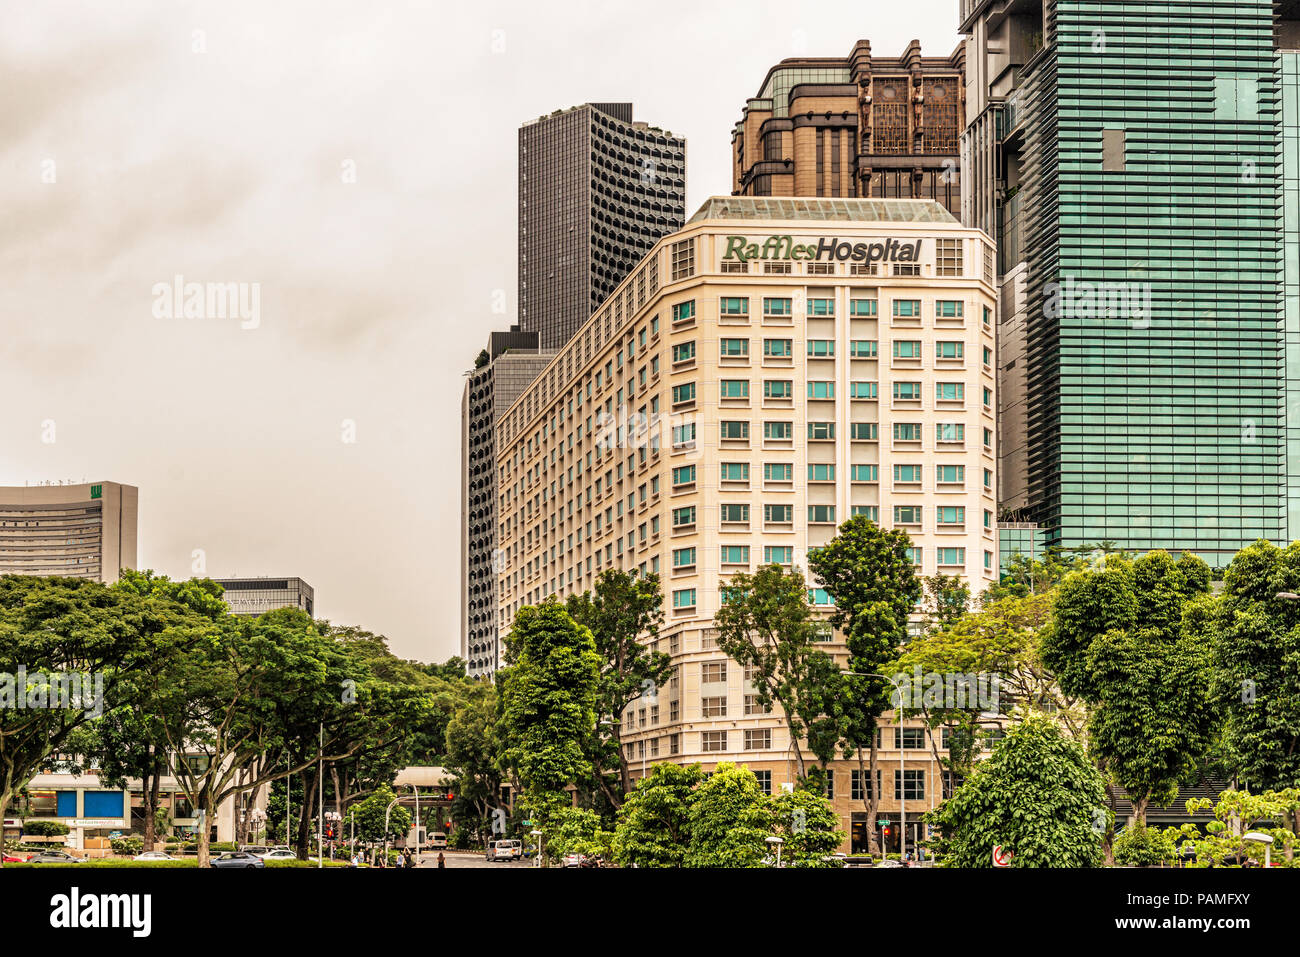 Singapour - 10 janvier 2018 : Façade de l'Hôtel Raffles Hospital bâtiments complexes vu de Orchid Road dans la ville de Singapour. Banque D'Images